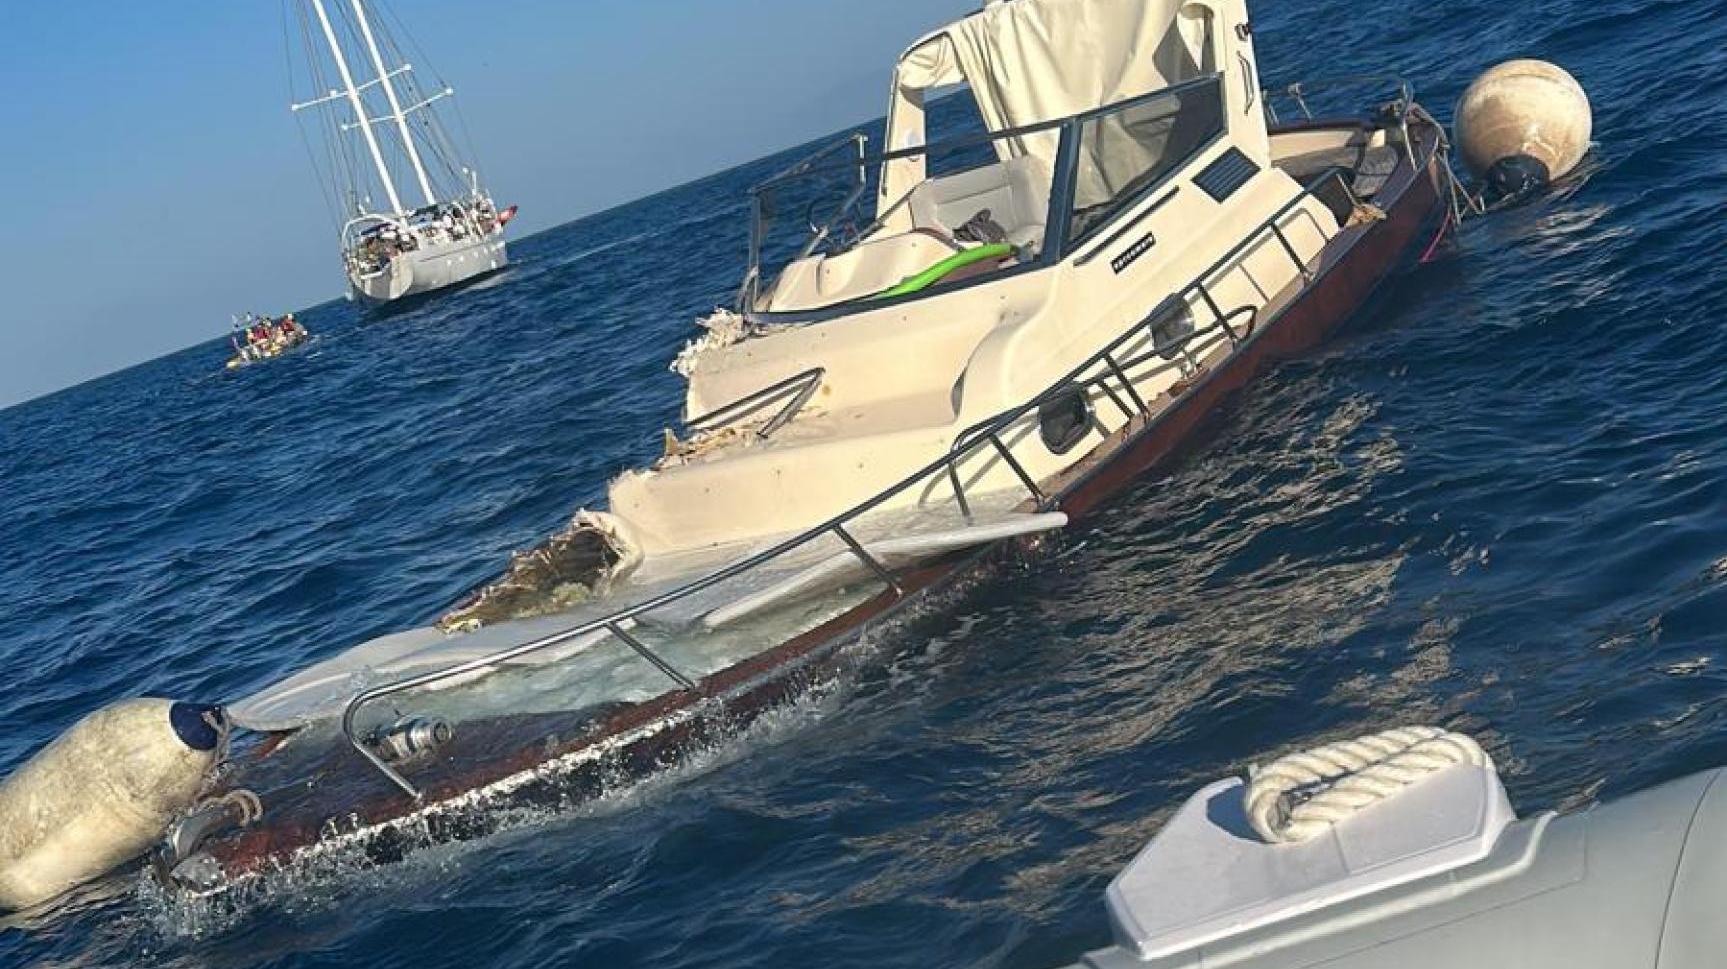 Turista morta in Costiera, lo skipper positivo ad alcool e droga: la donna è finita tra le eliche